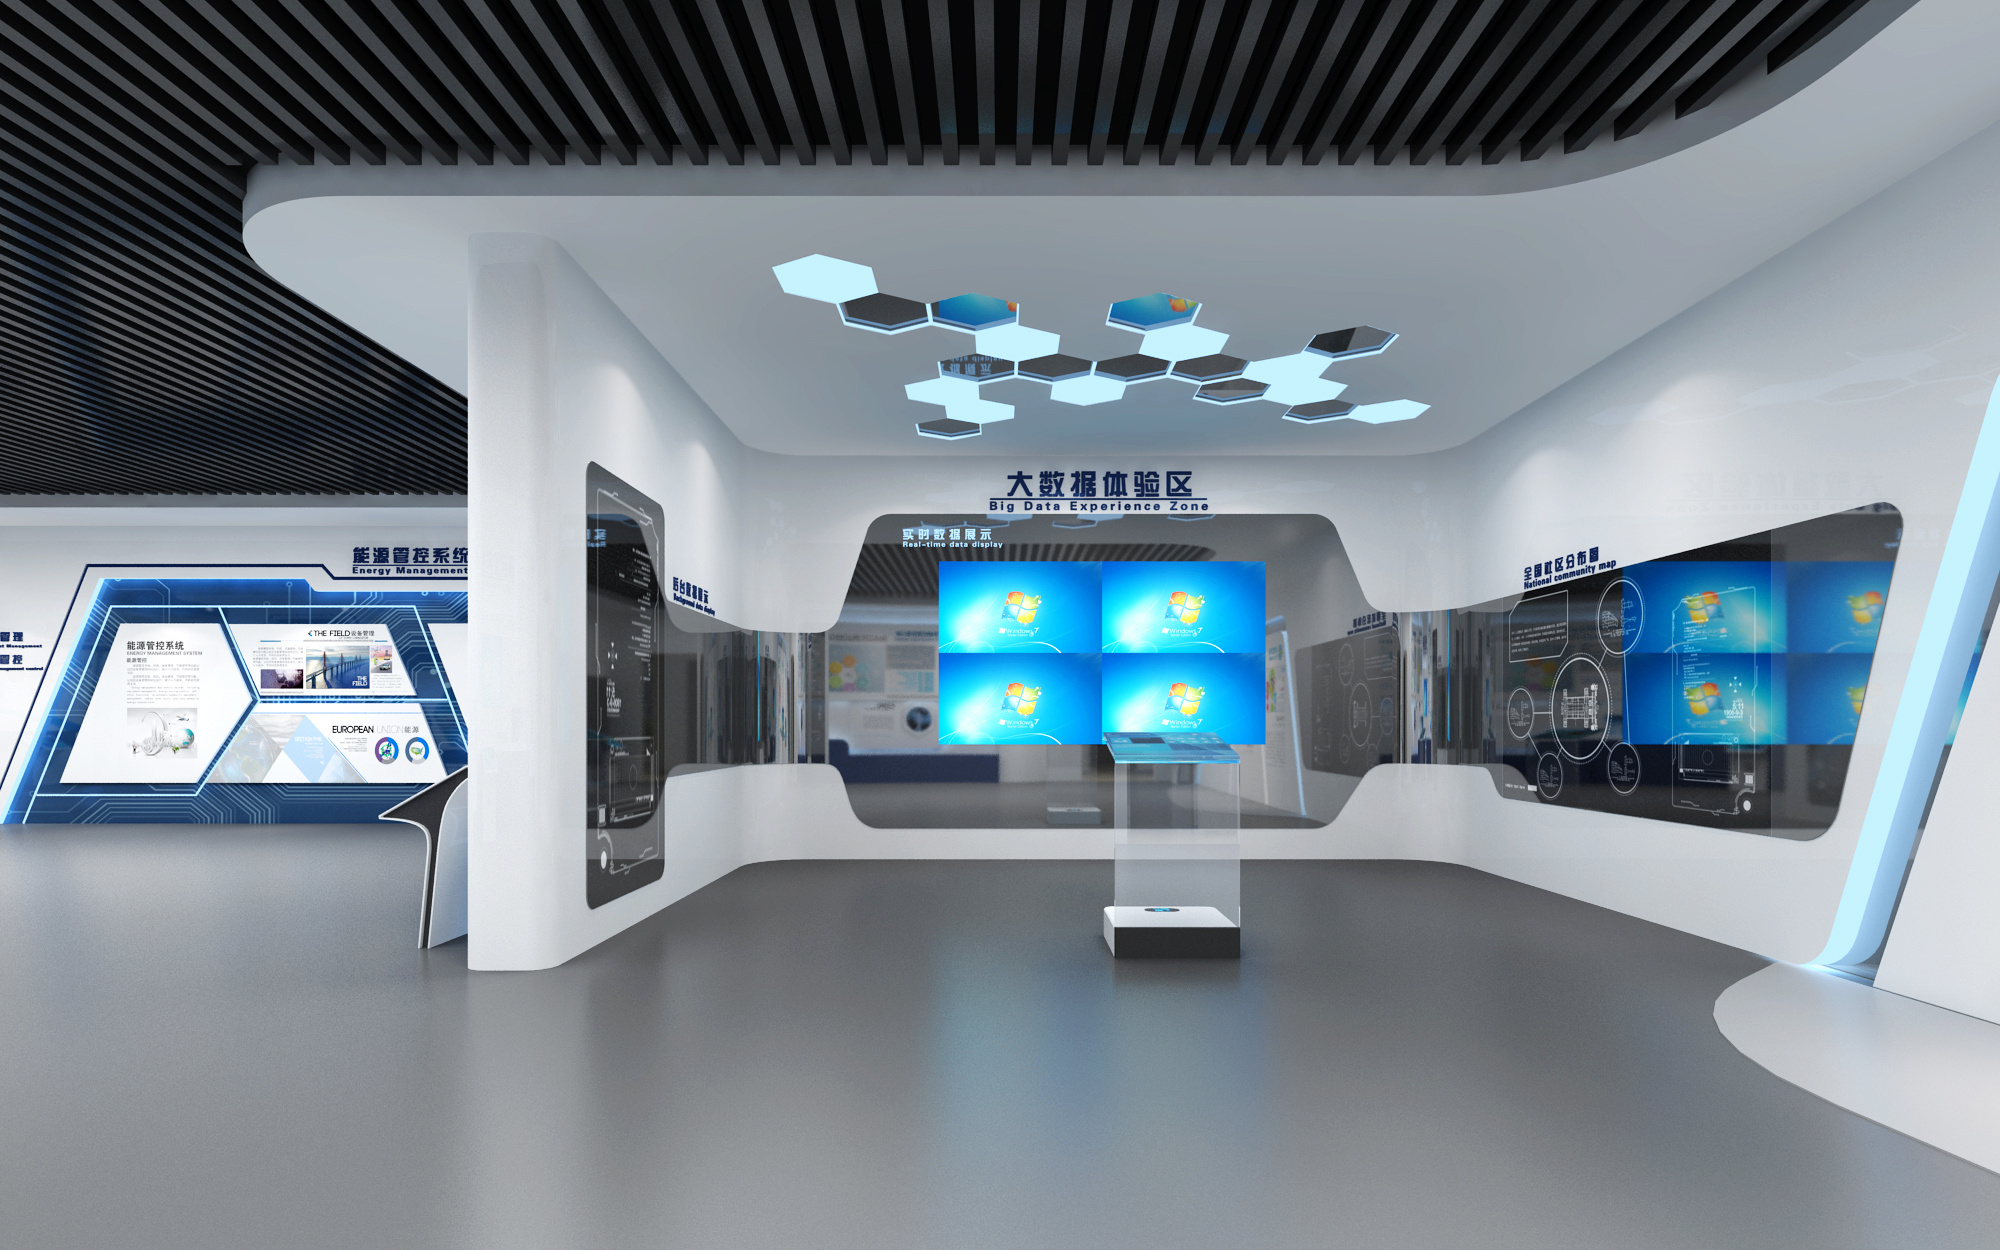 虚拟展厅的意义是什么？有什么优势？ – 深圳市岩星科技建设有限公司